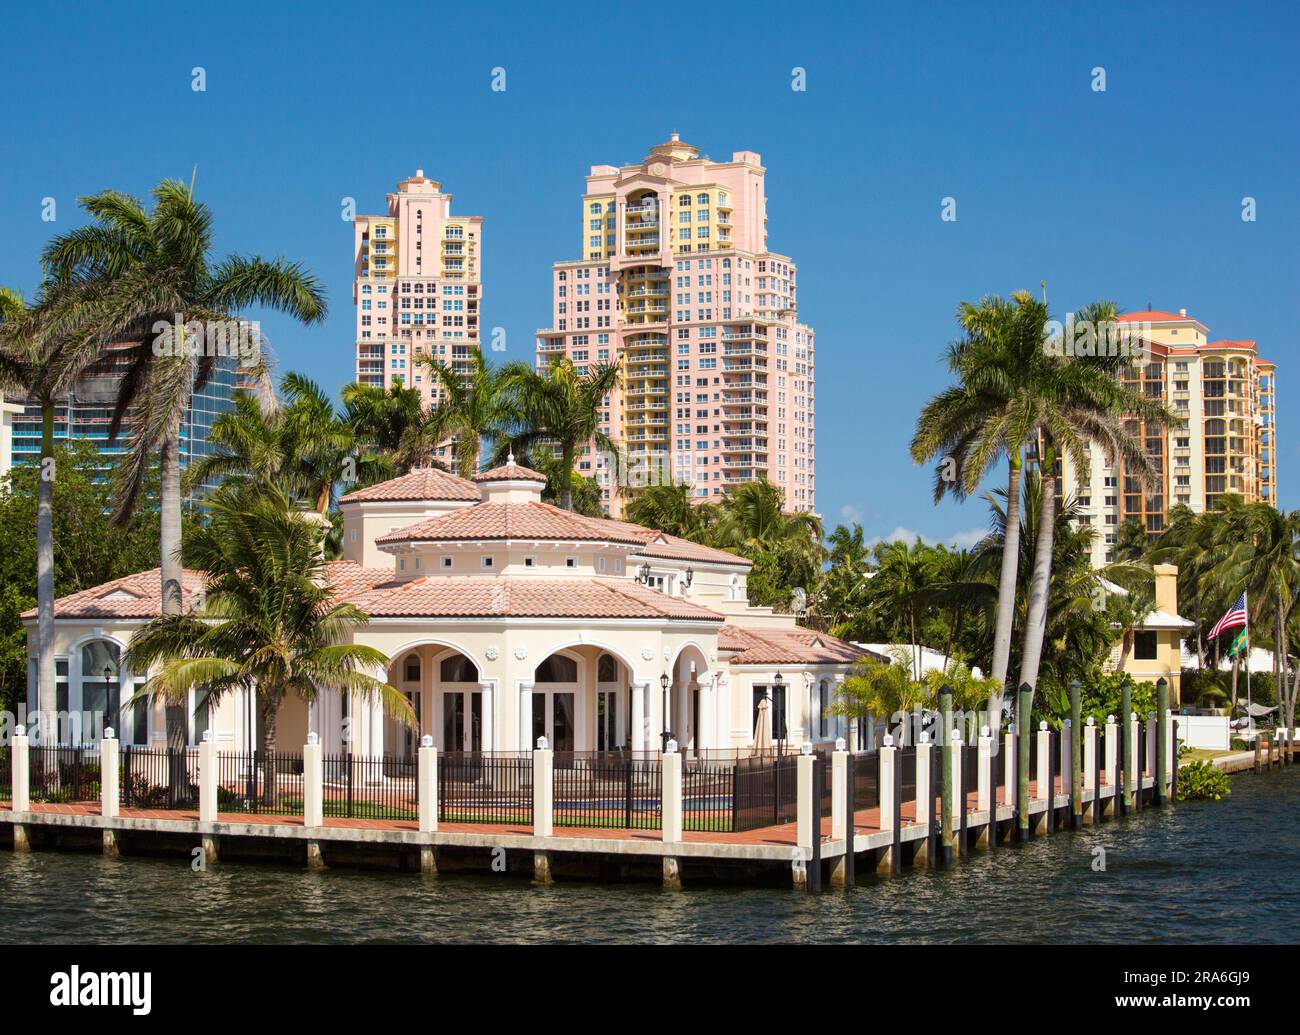 Fort Lauderdale, Floride, États-Unis. Propriétés de faible hauteur et de grande hauteur à côté de l'Intracoastal Waterway dans le district des Dolphin Isles. Banque D'Images